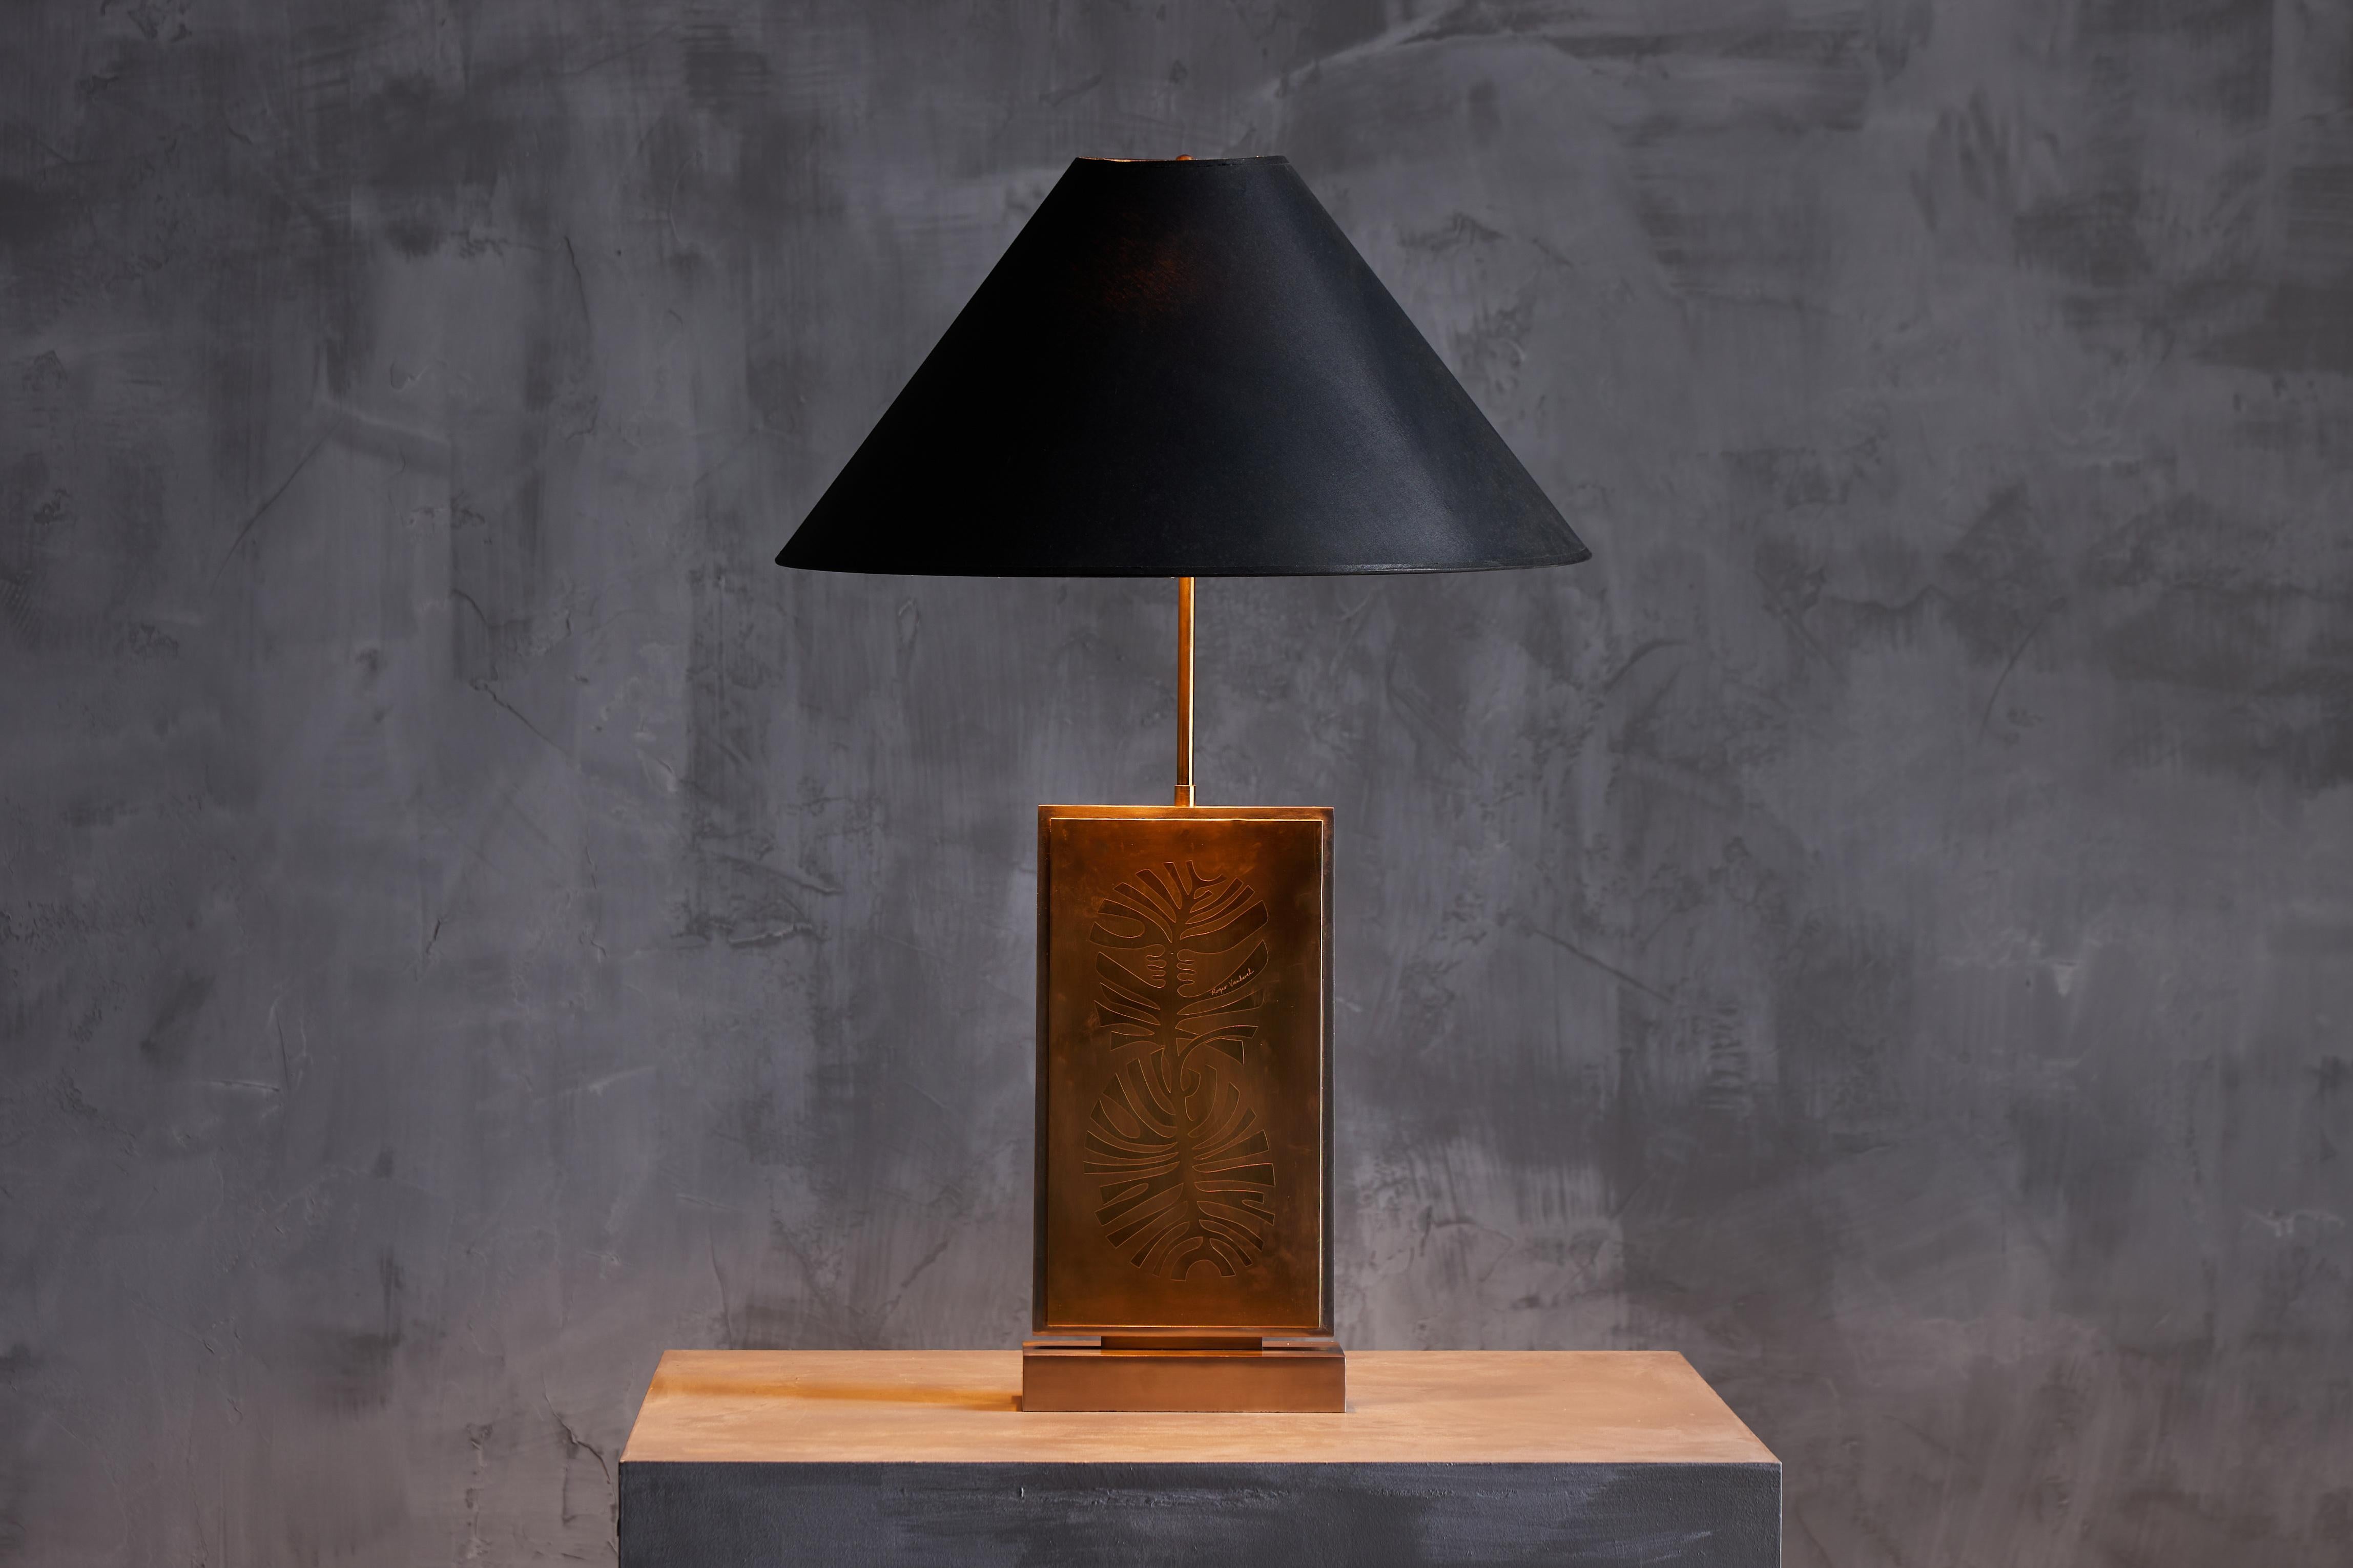 Tischleuchte des belgischen Designers Roger Vanhevel aus den 1970er Jahren. Diese Lampe mit ihrem beeindruckenden Sockel aus geätztem Messing, der vom Künstler persönlich signiert ist, strahlt Raffinesse und Individualität aus. Sein verchromter